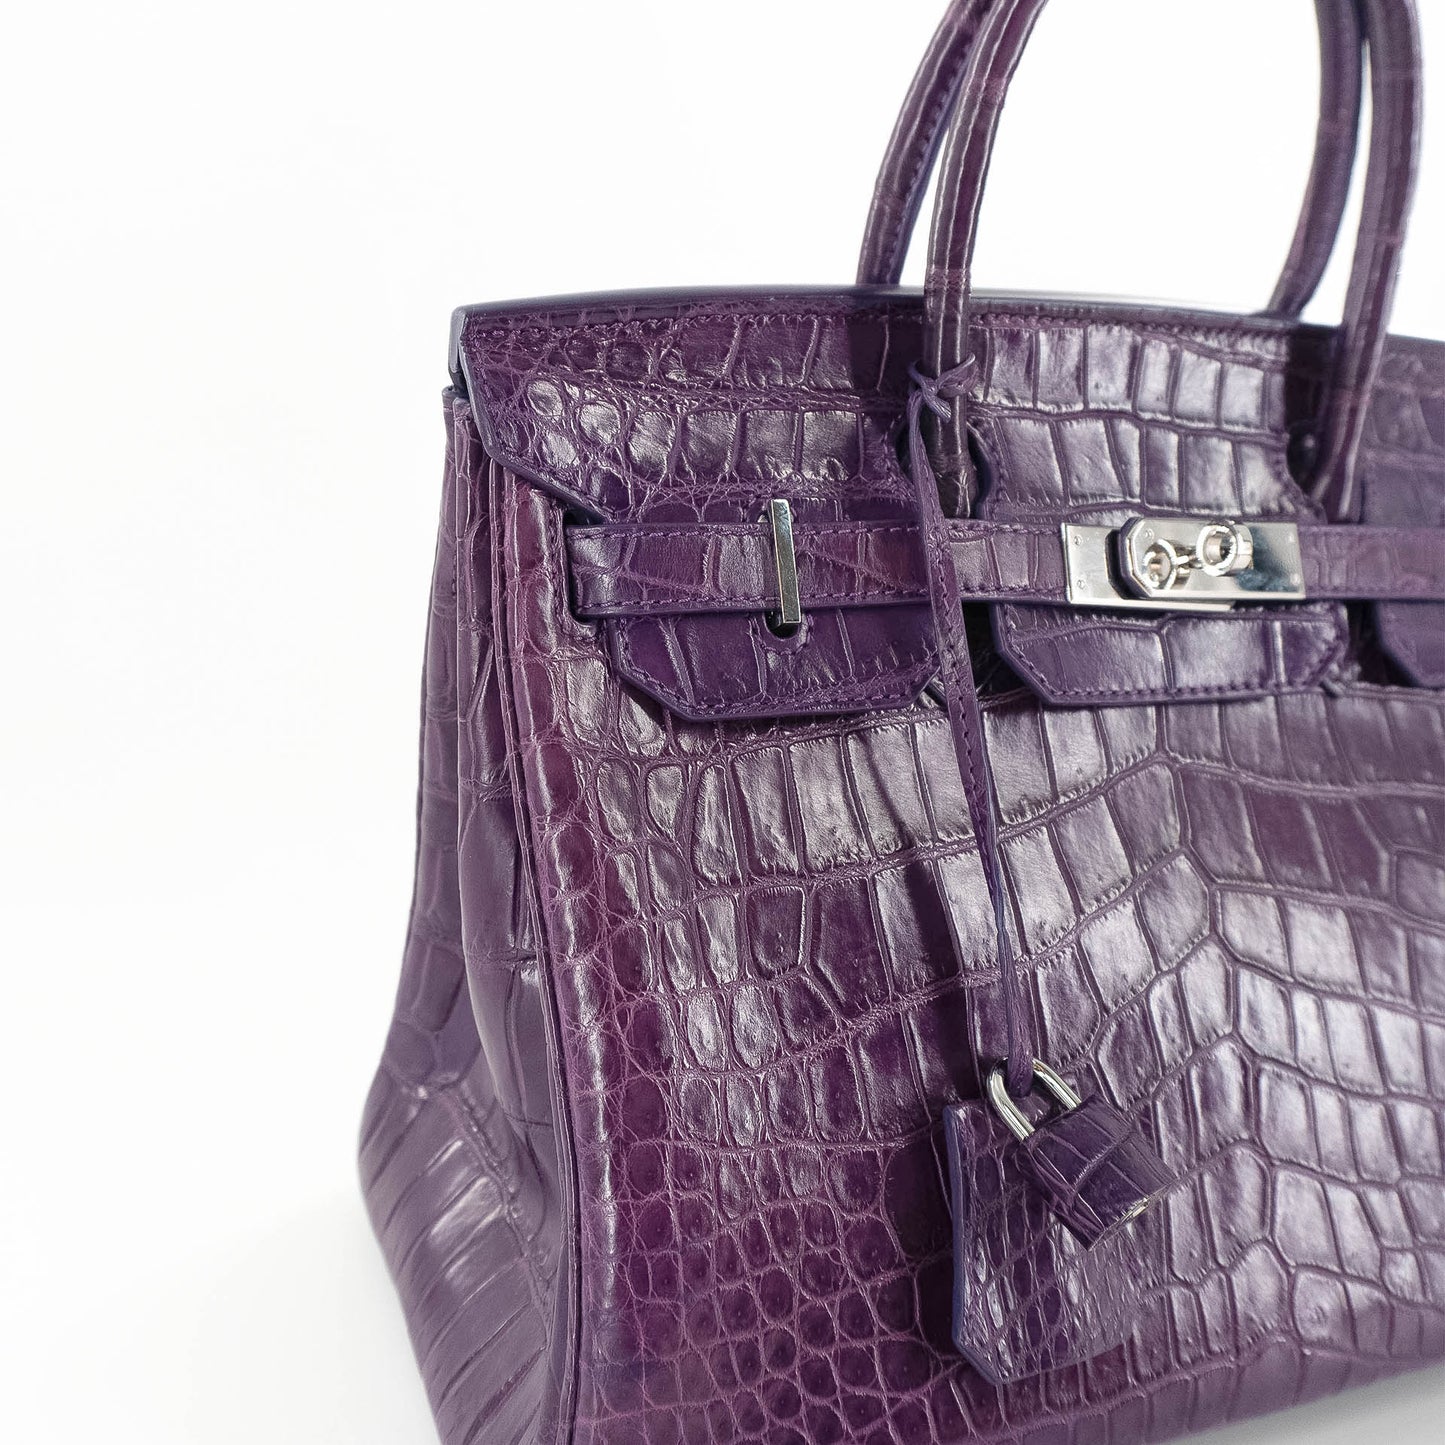 Duchess Handbag in Matte Purple Crocodile Belly Skin